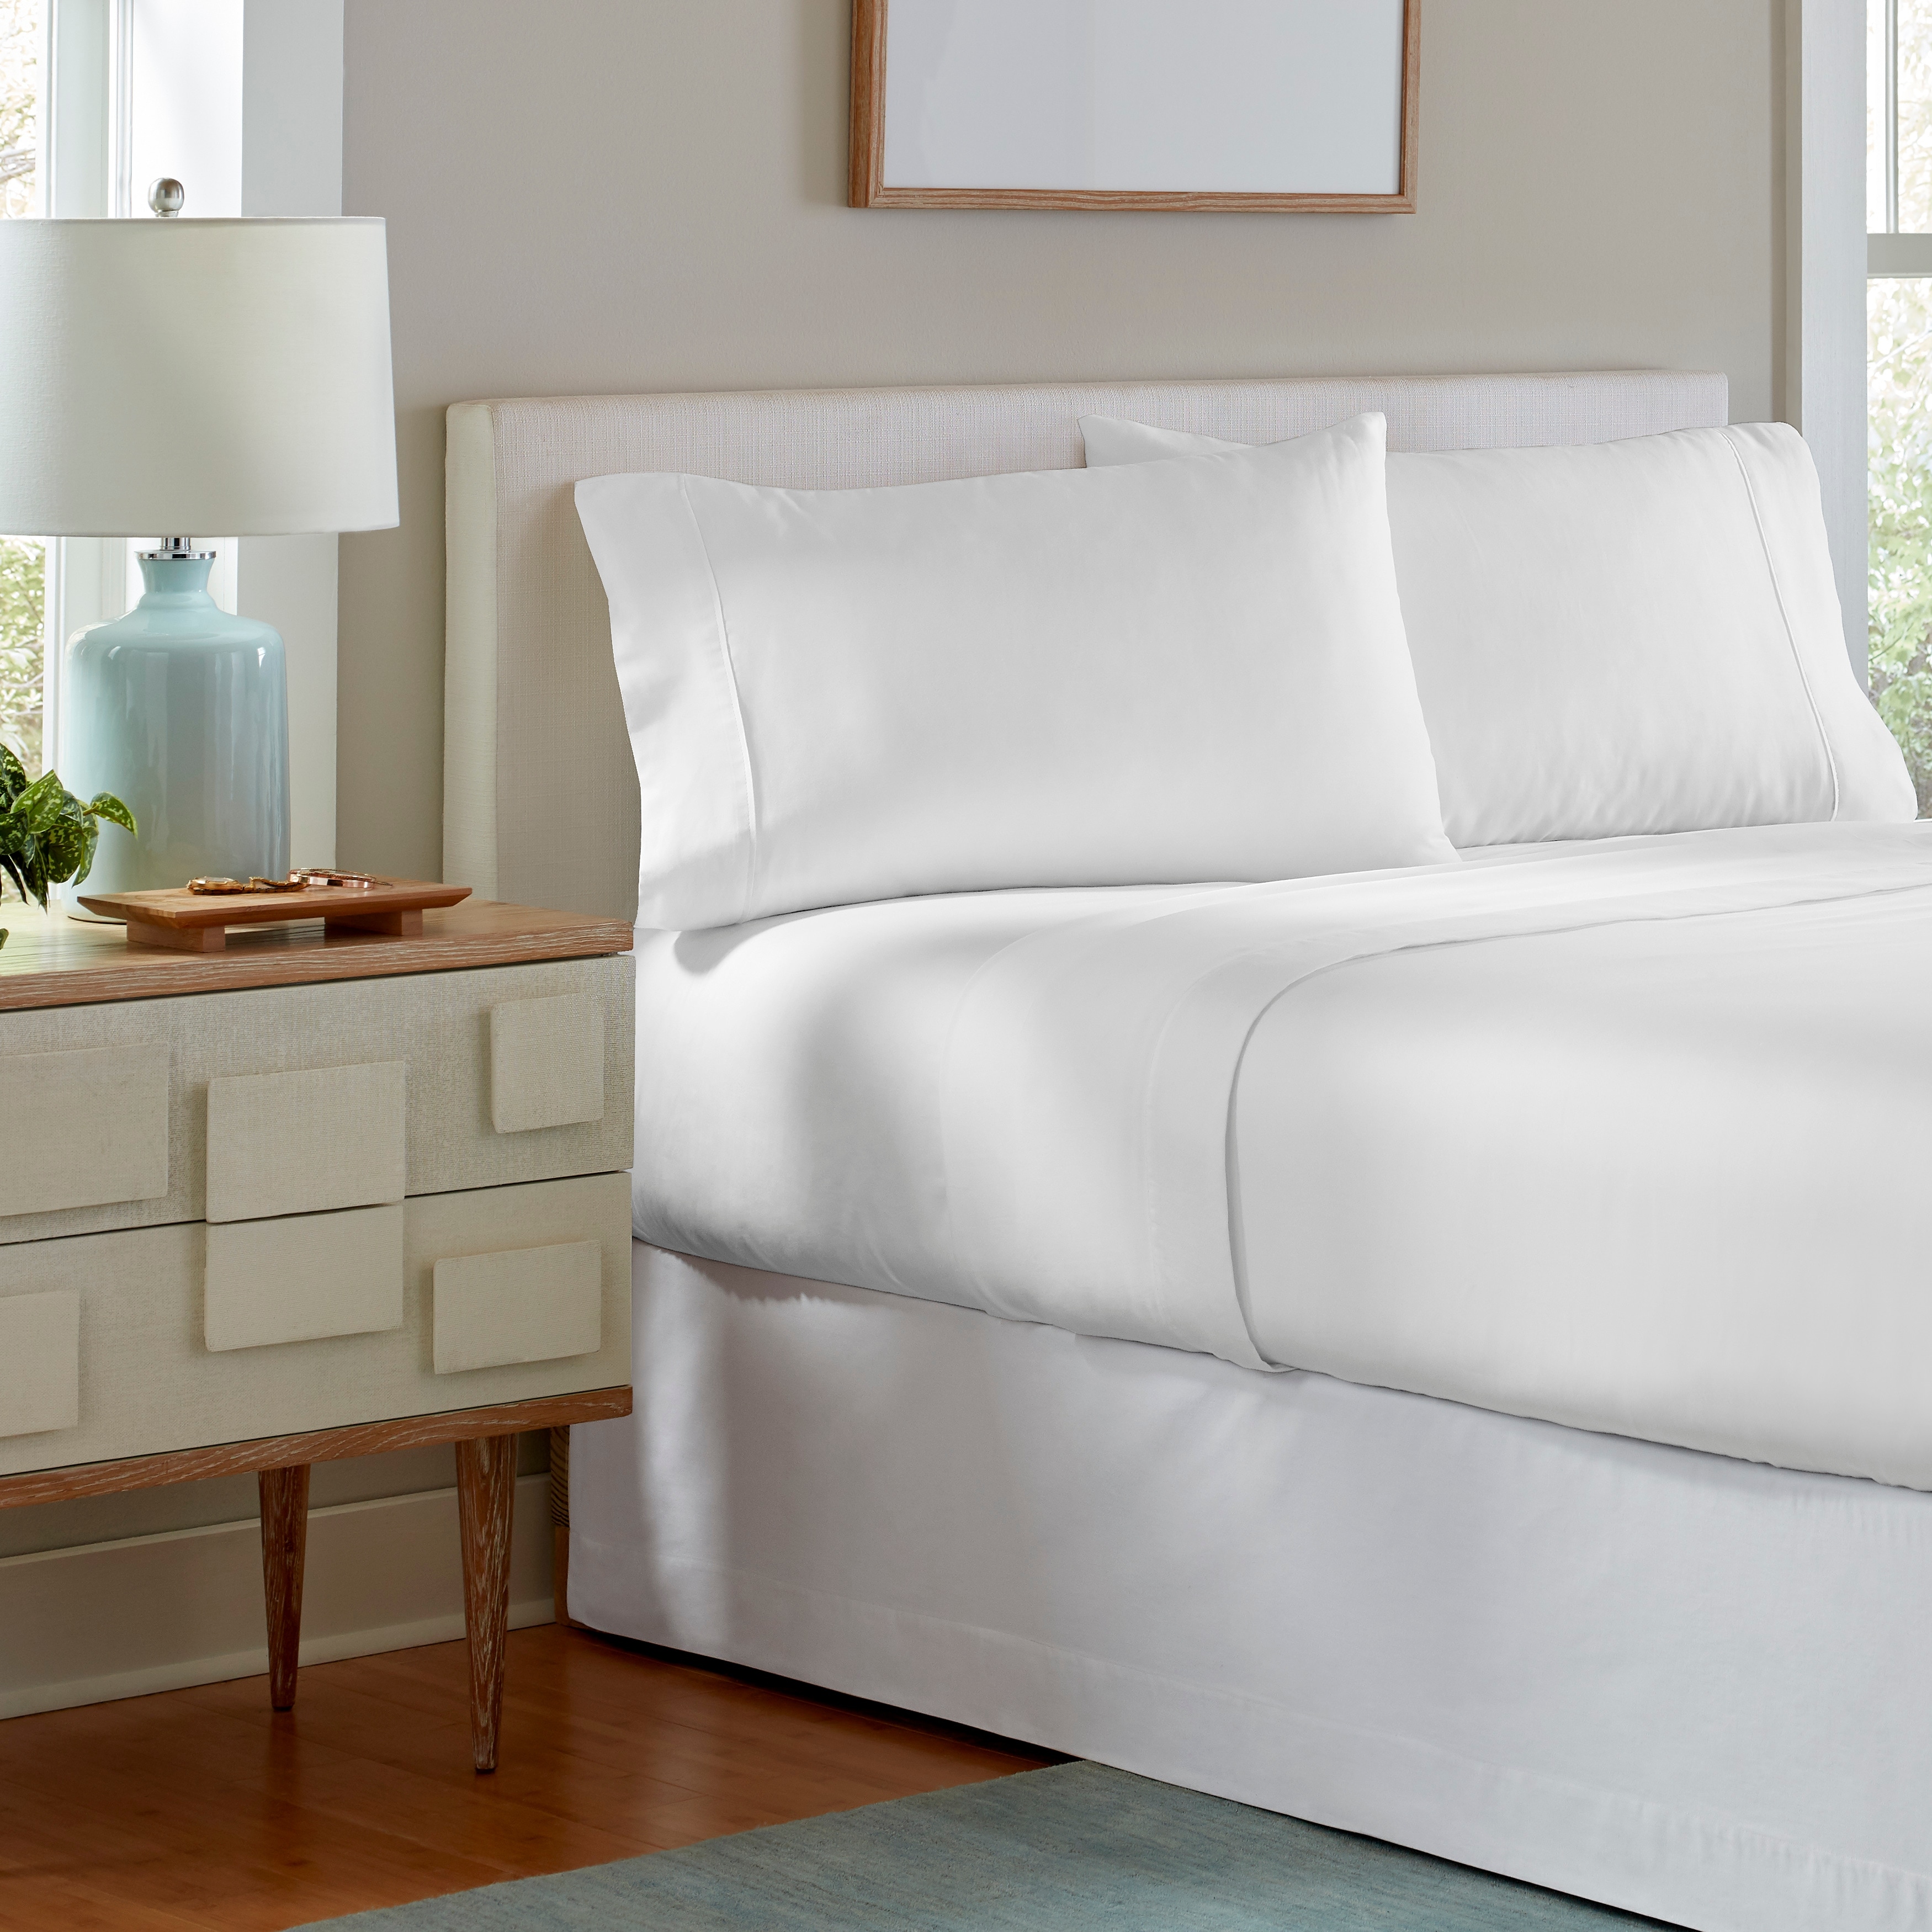 Celeste Home 190 GSM Cotton Flannel Velvet Feel Bed Sheet Set - On Sale -  Bed Bath & Beyond - 18101165